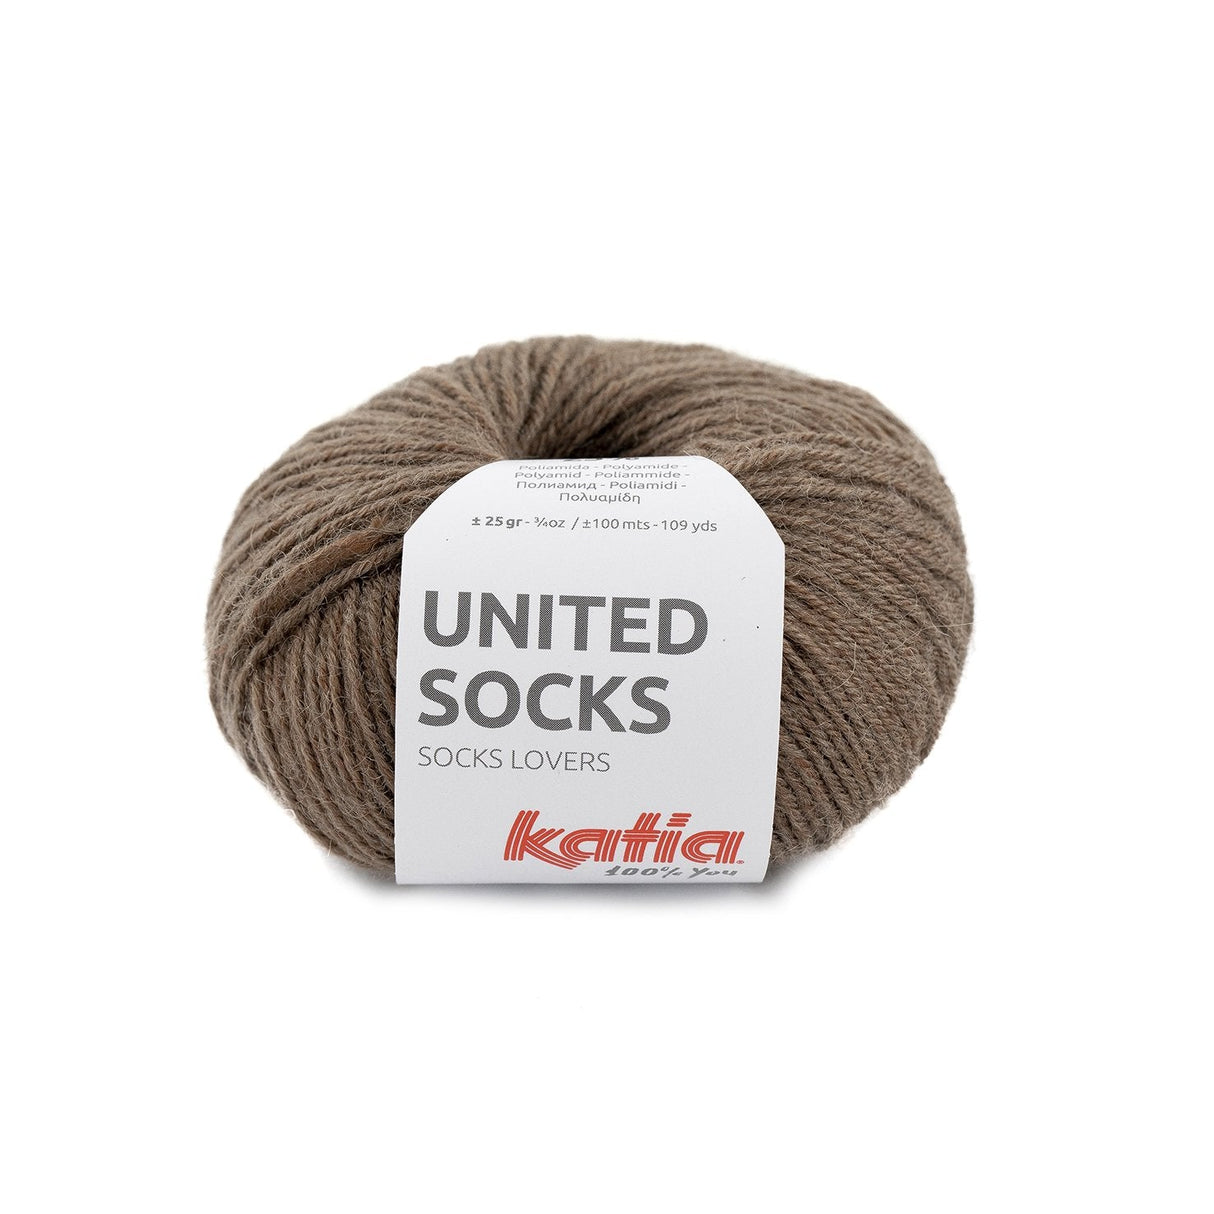 Katia United Socks - Laine de qualité pour tricoter des chaussettes